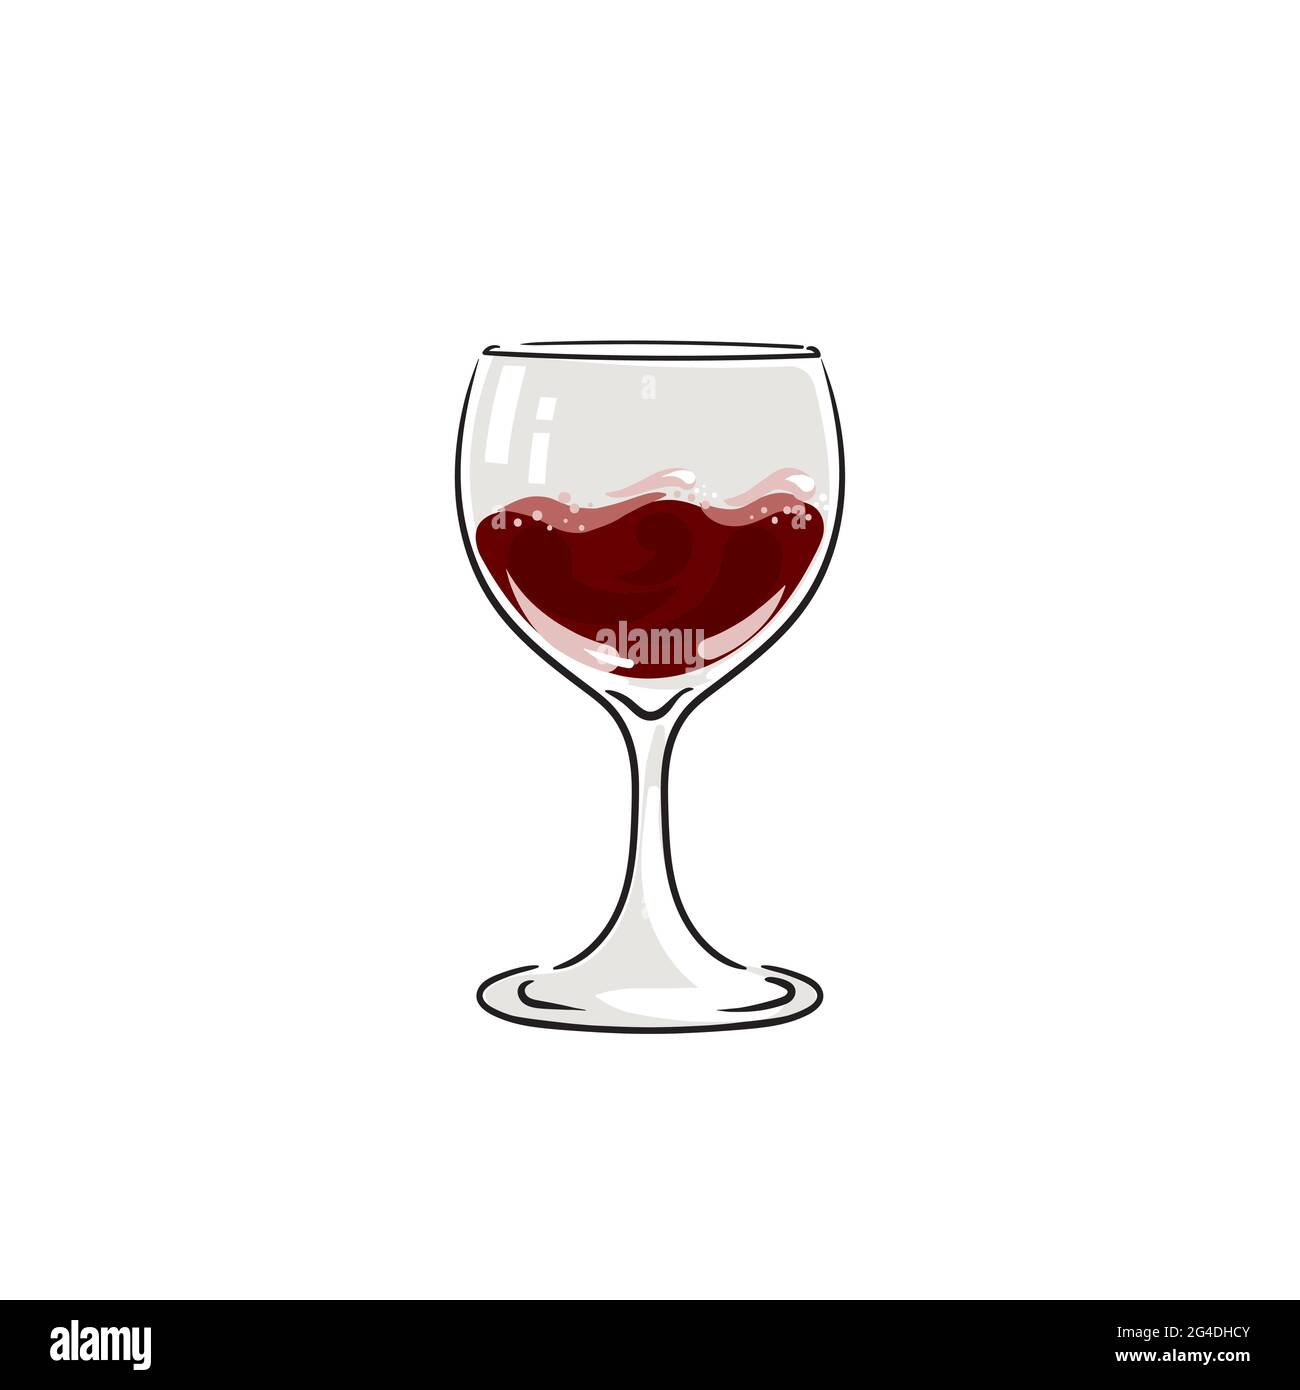 Bicchiere di vino. Icona alcool, simbolo, logo. Per il menu, bar, ristorante, carta dei vini. Illustrazione vettoriale di scorta isolata su sfondo bianco. Illustrazione Vettoriale